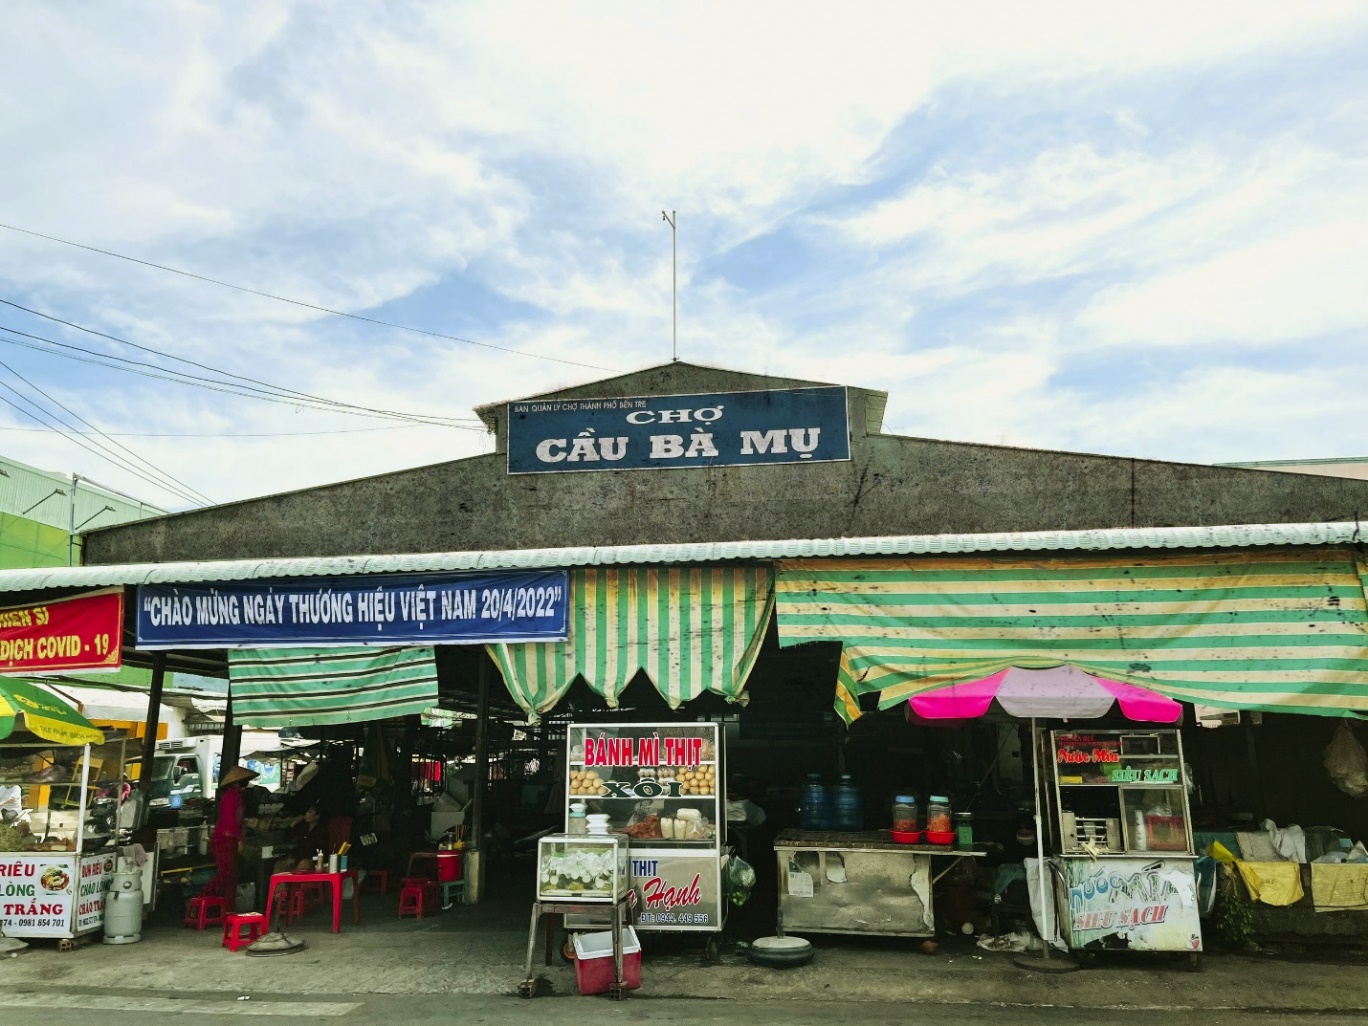 Khám phá Chợ Bà Mụ mới bên trong Phố Chợ Phú Khương ở xứ dừa Bến Tre - Ảnh 2.